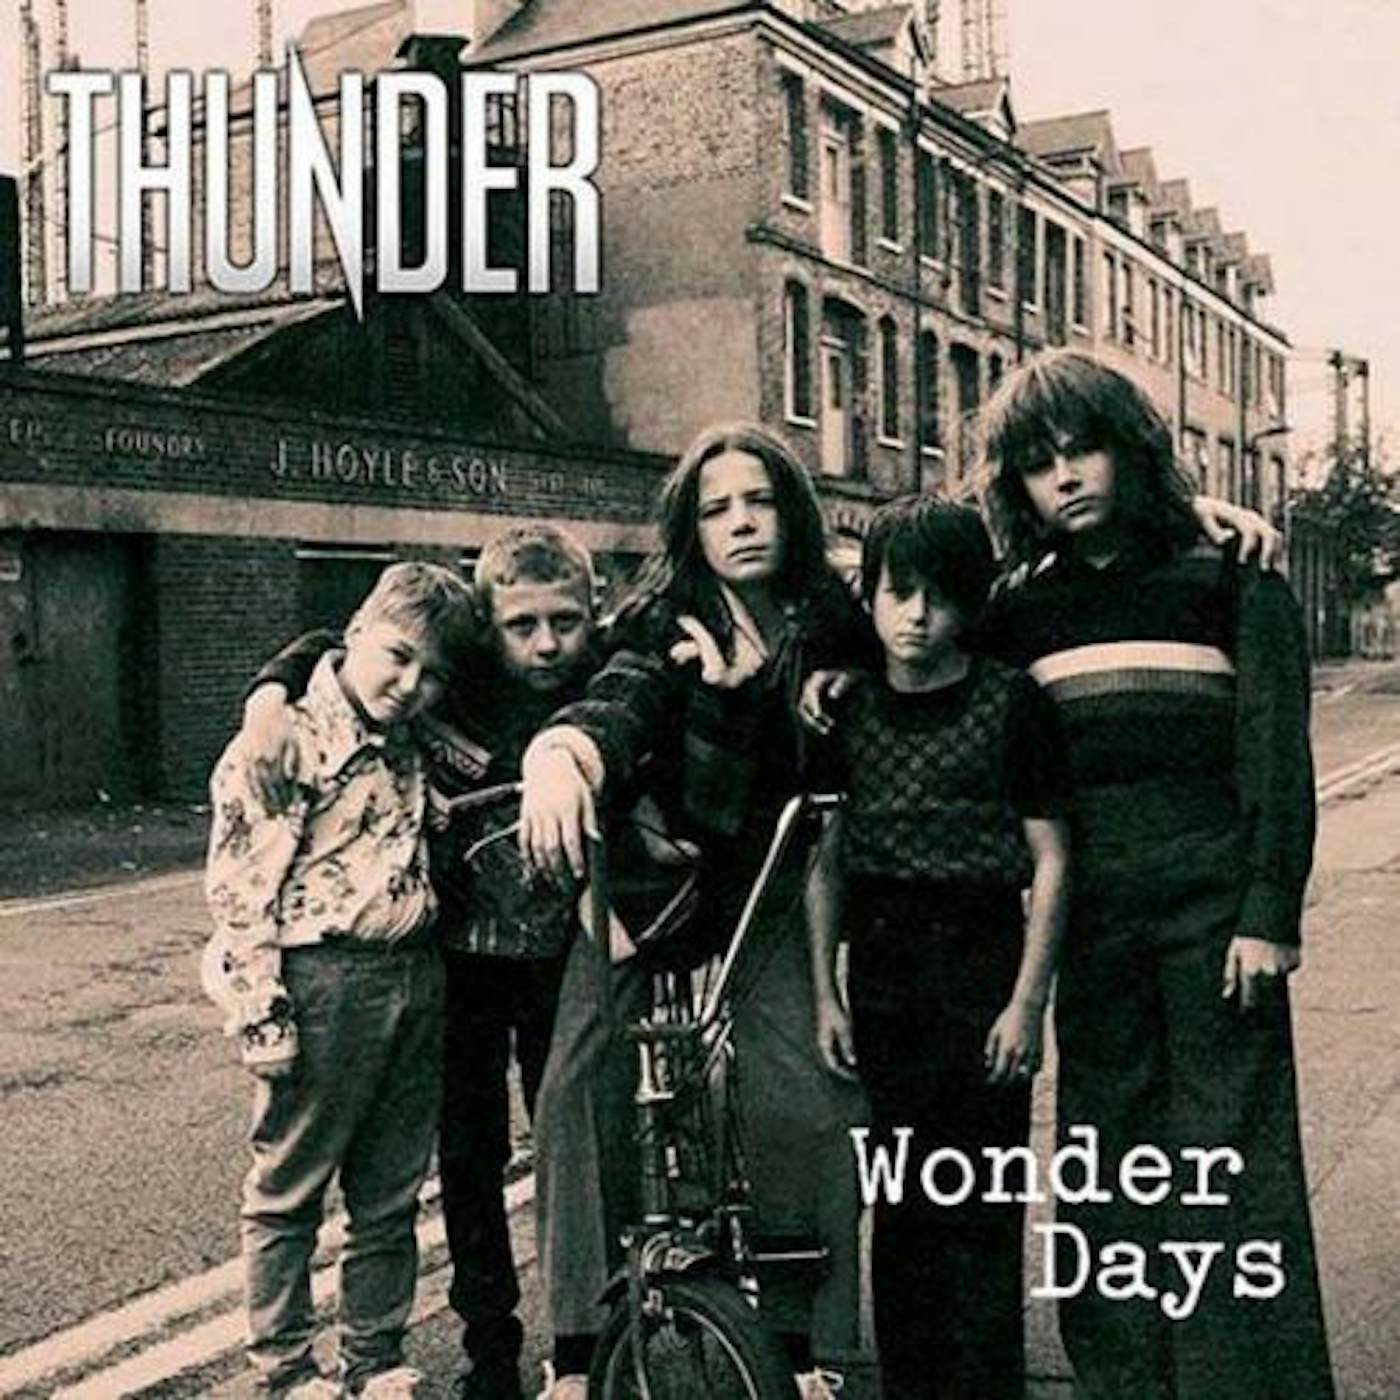 Thunder WONDER DAYS CD